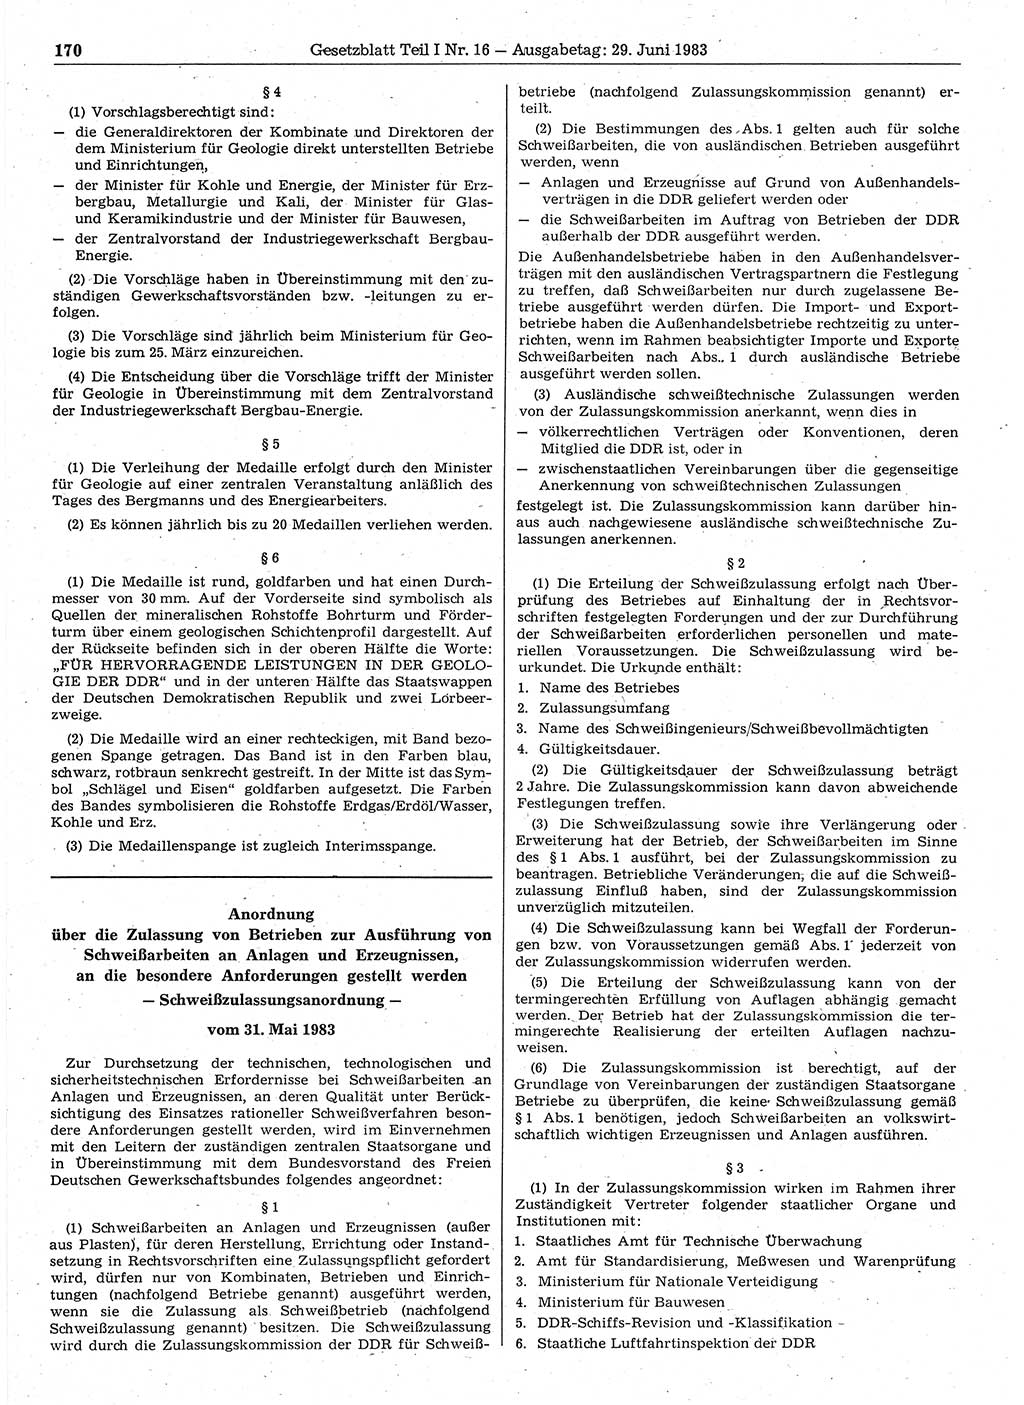 Gesetzblatt (GBl.) der Deutschen Demokratischen Republik (DDR) Teil Ⅰ 1983, Seite 170 (GBl. DDR Ⅰ 1983, S. 170)